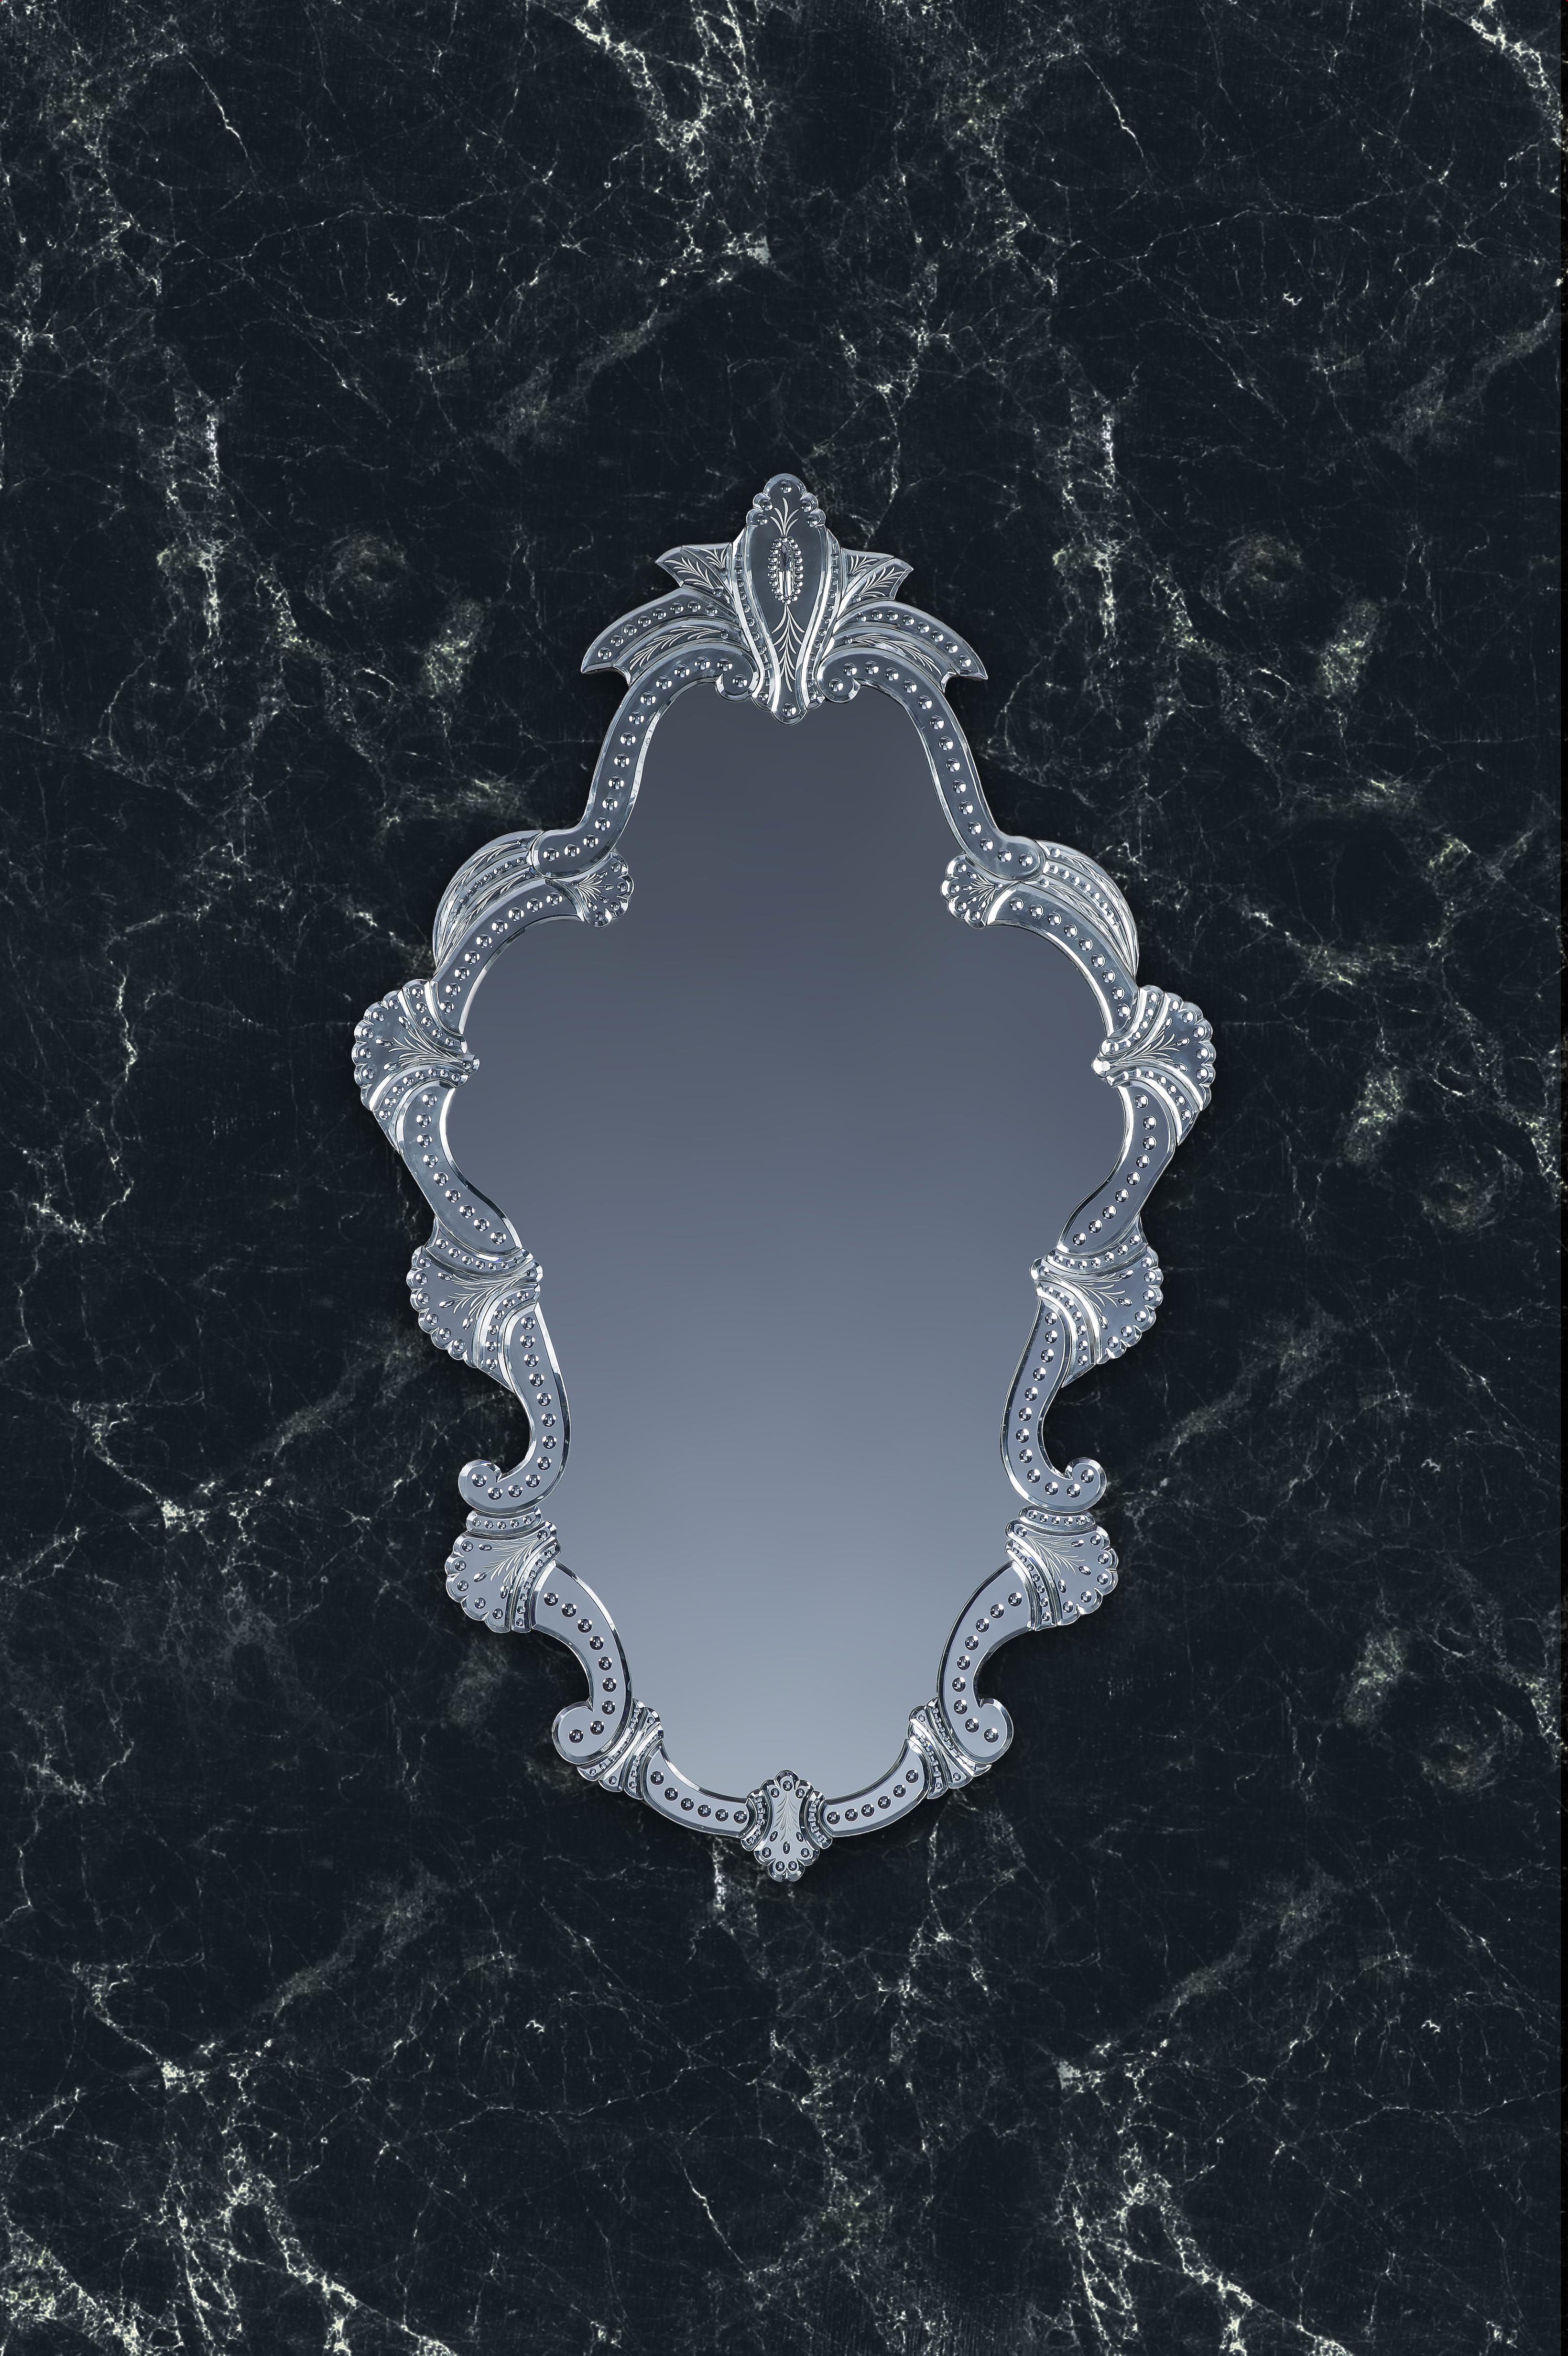 Luxuriöser Spiegel aus Murano-Glas, im französischen Stil des 19. Jahrhunderts, hergestellt von den Gebrüdern Tosi auf der Insel Murano, ganz geschliffen, graviert. Die Versilberung aus reinem Silber, die vollständig von Hand geschnitzt und poliert